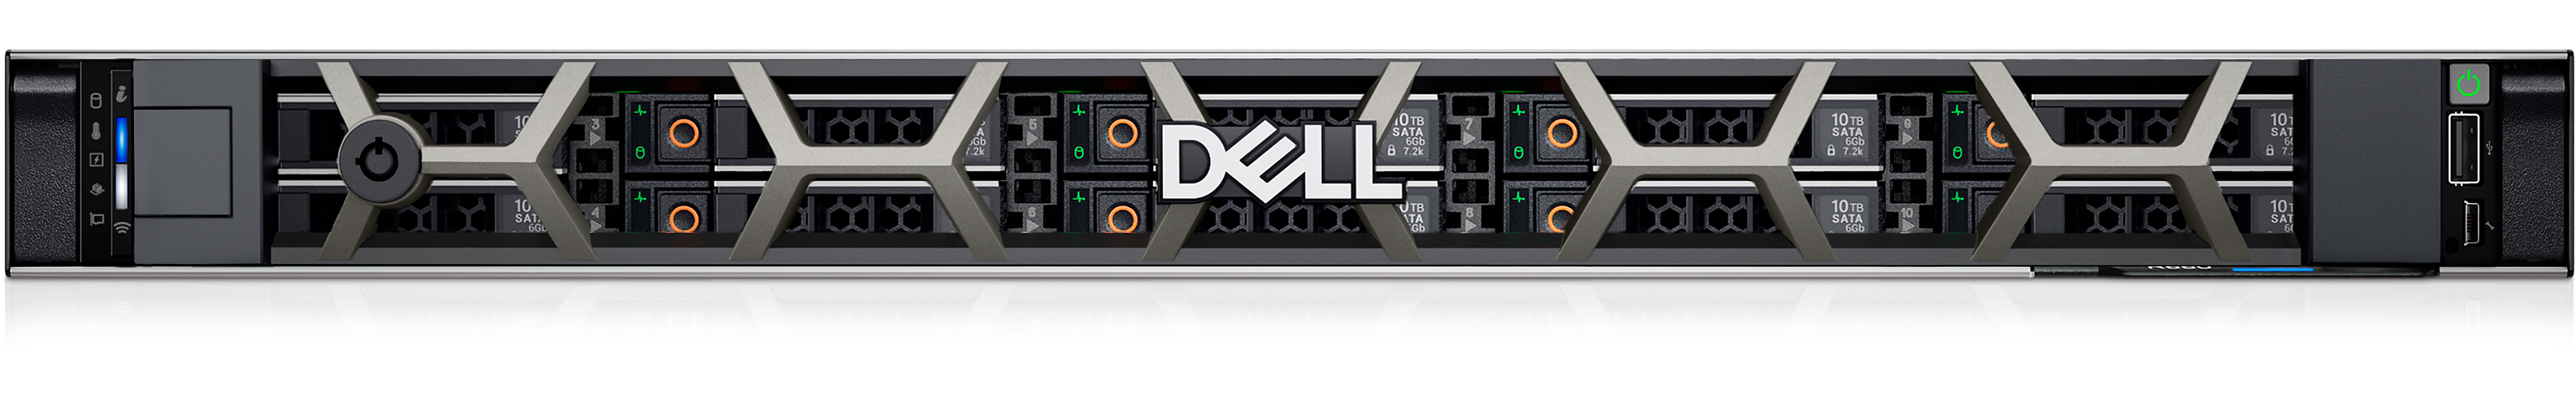 Dell PowerEdge R660 Rack Server